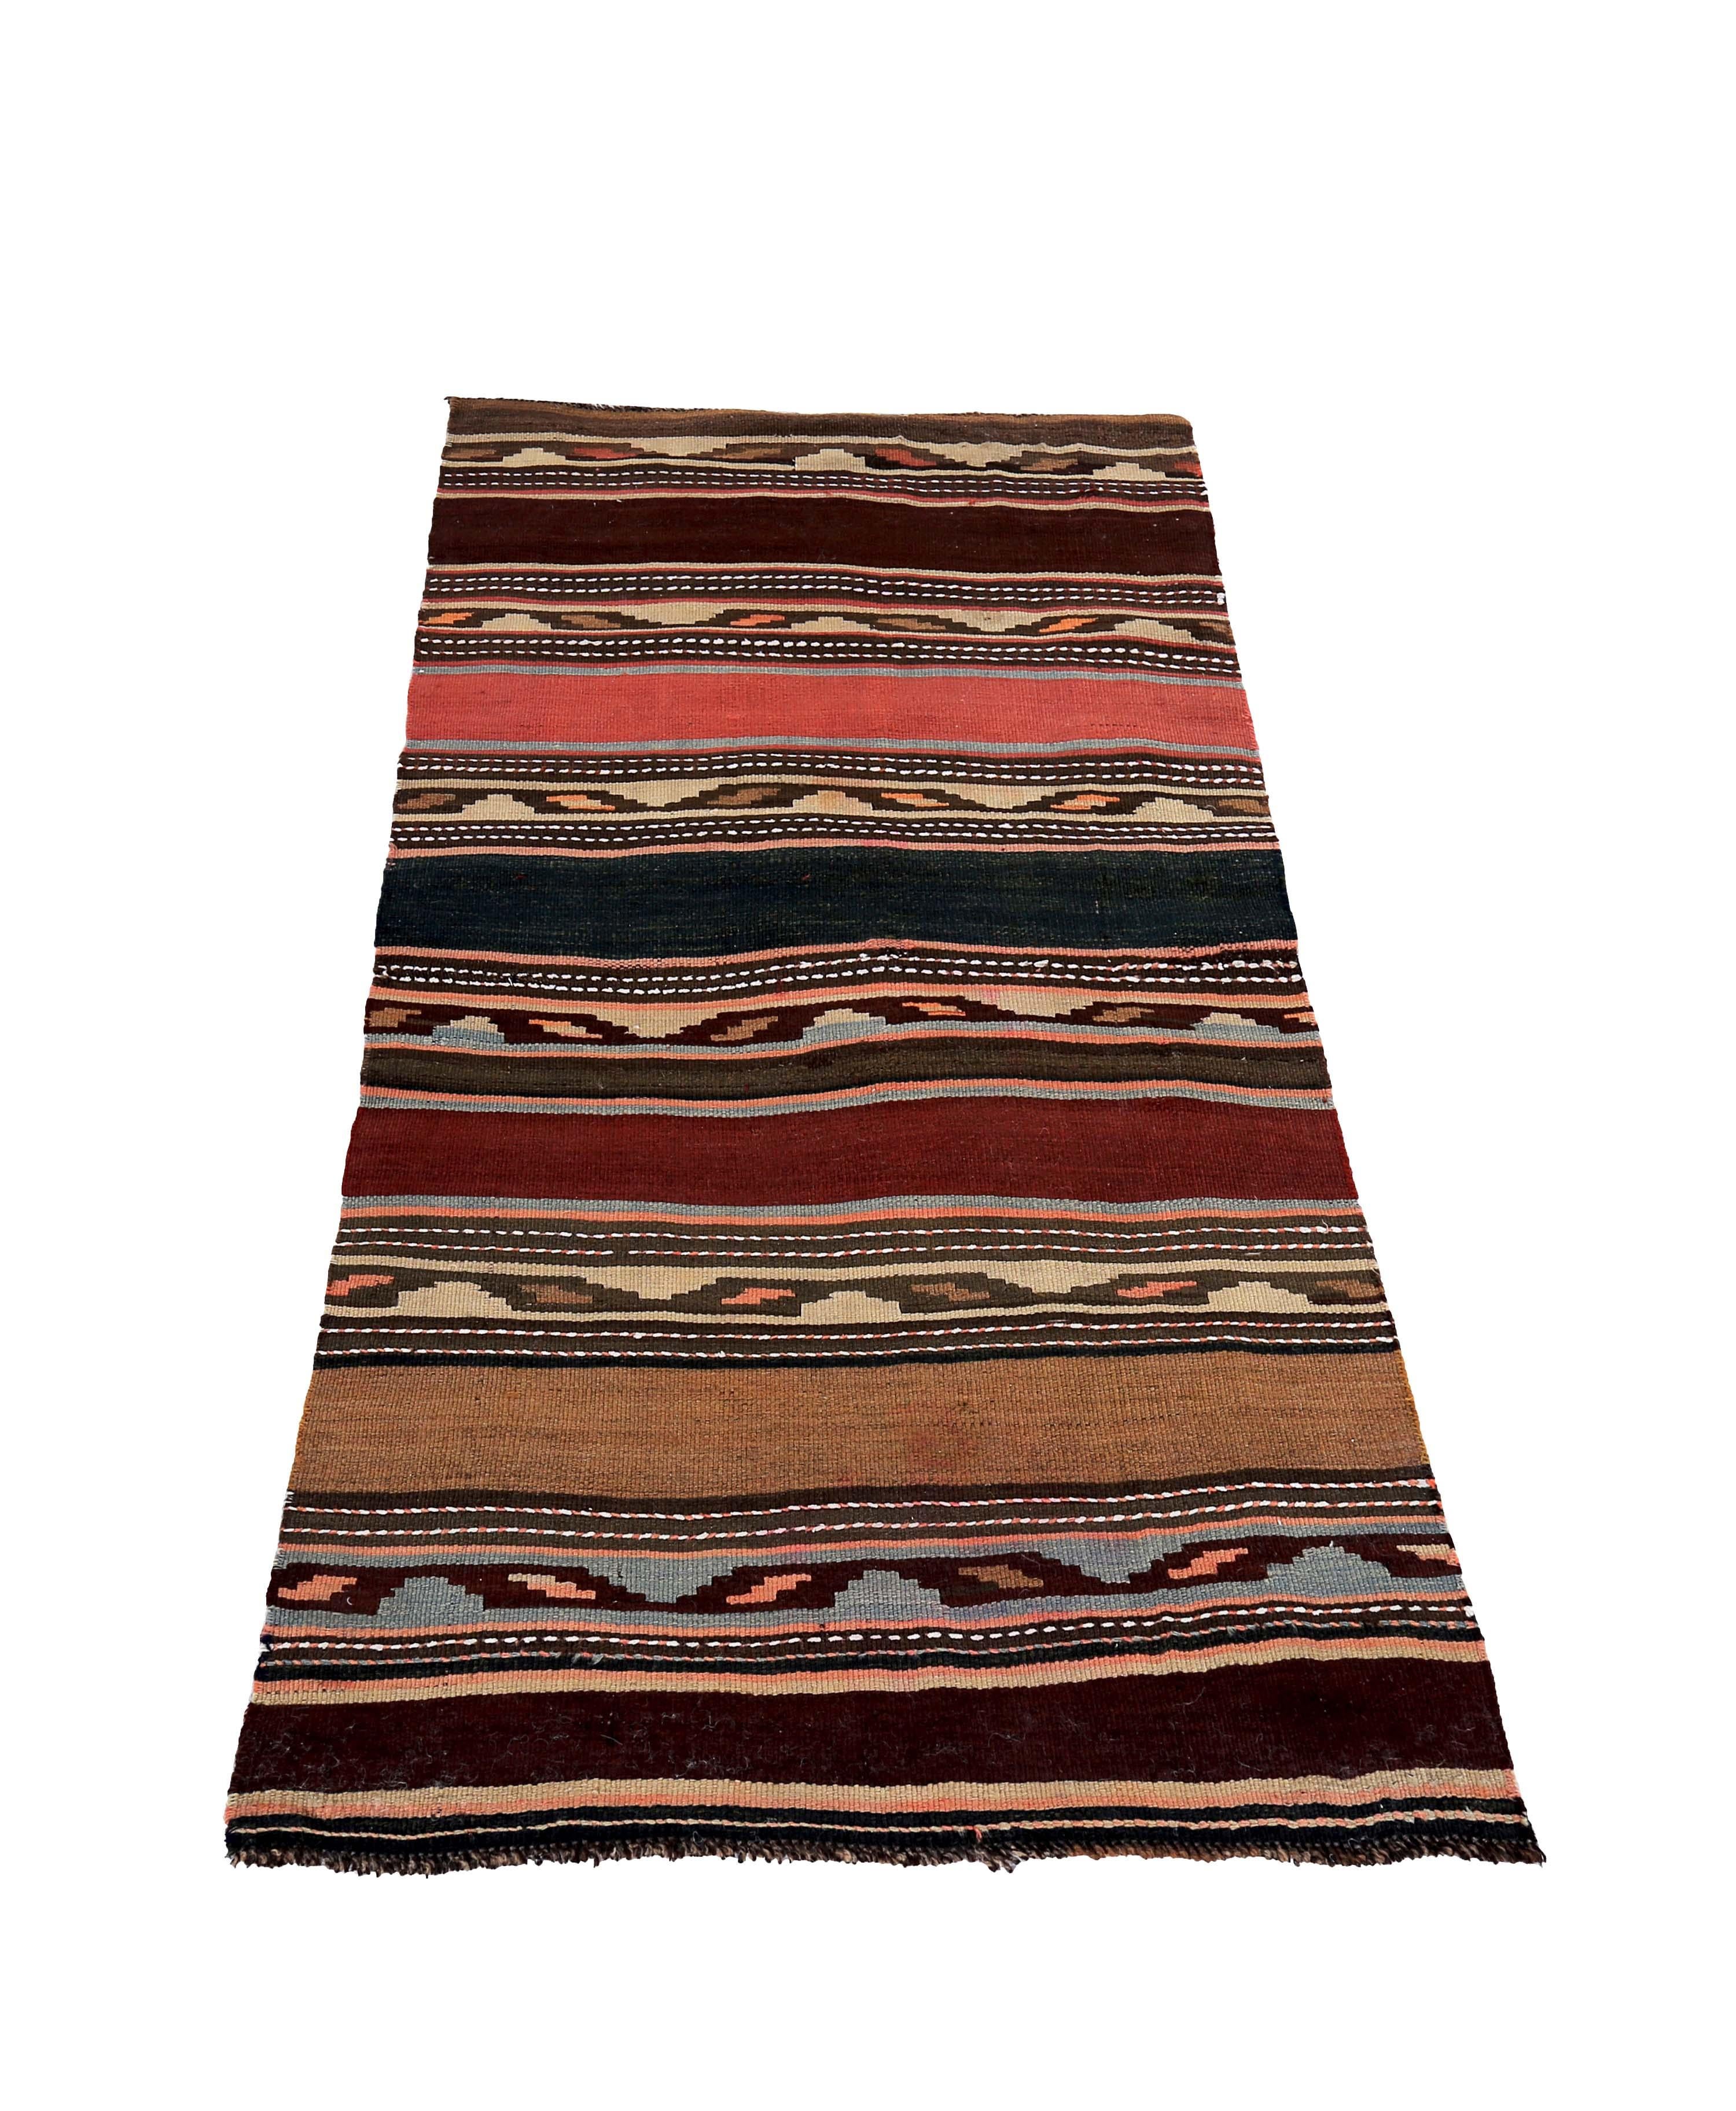 Türkischer Teppich, handgewebt aus feinster Schafwolle und gefärbt mit natürlichen pflanzlichen Farbstoffen, die für Menschen und Haustiere sicher sind. Es handelt sich um ein traditionelles Kelim-Flachgewebemuster mit braunen, orangefarbenen und